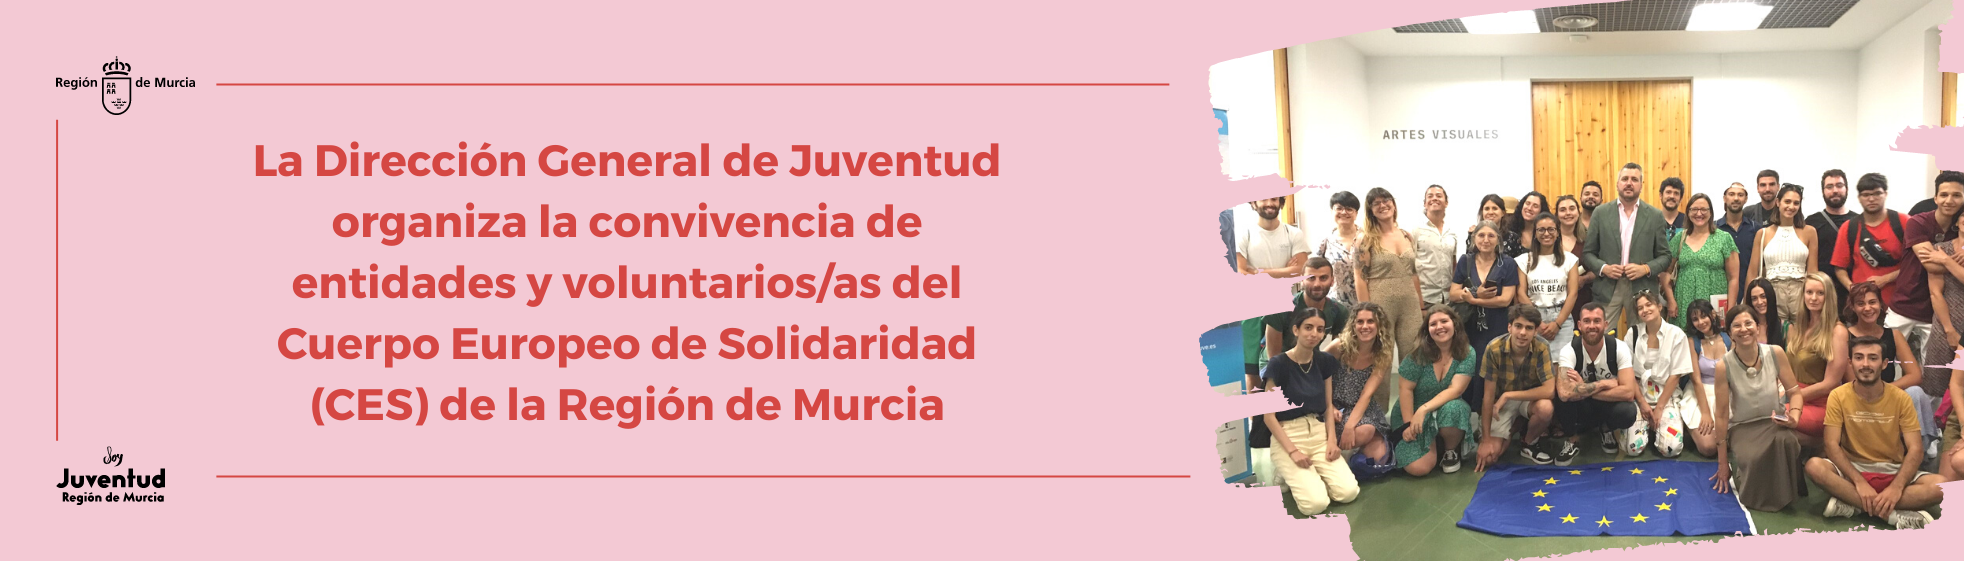 La Dirección General de Juventud organiza la convivencia de entidades y voluntarios/as del Cuerpo Europeo de Solidaridad (CES) de la Región de Murcia